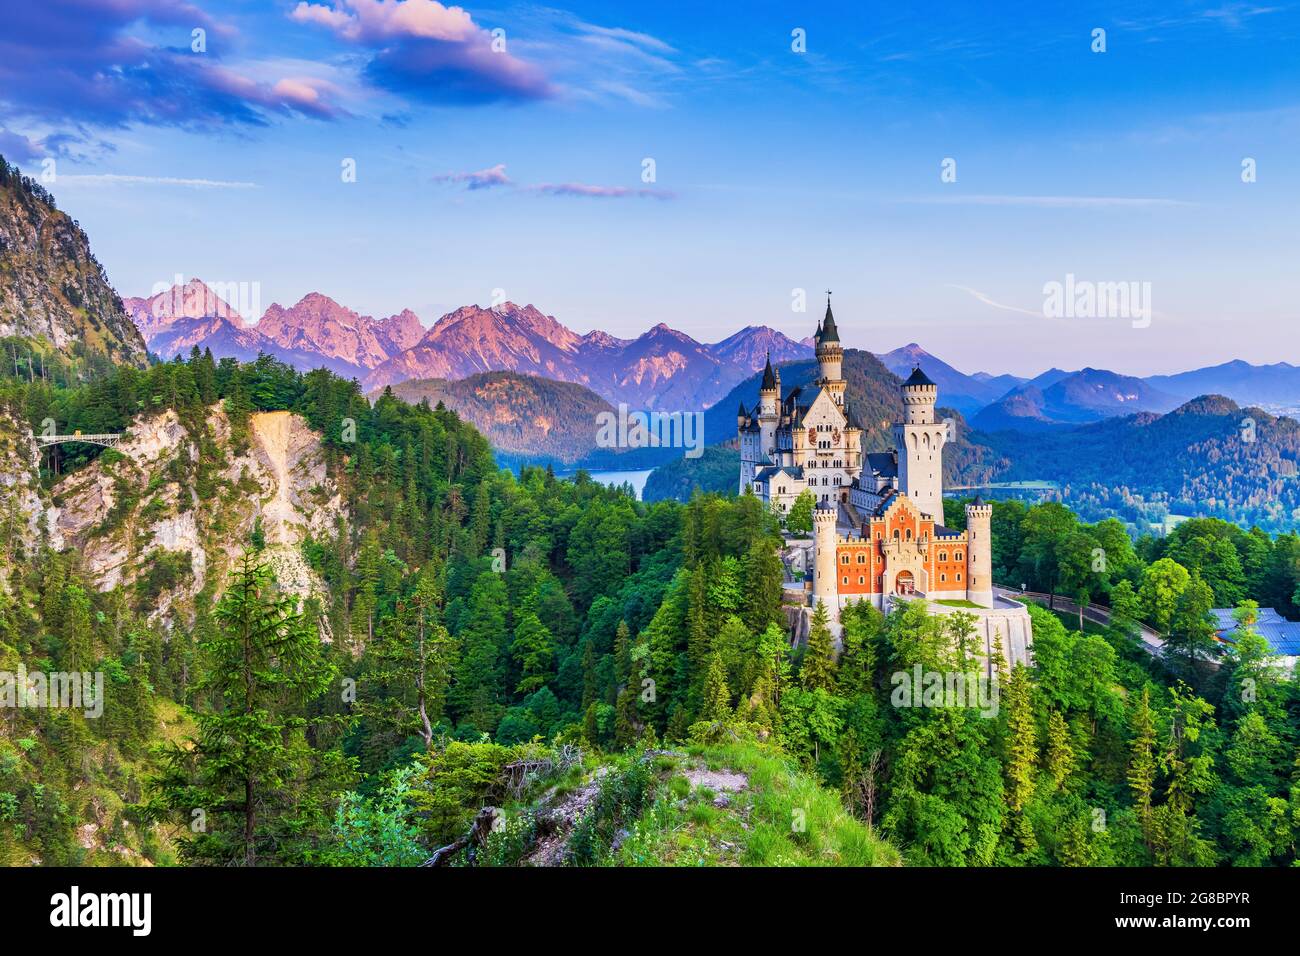 Schloss Neuschwanstein, Deutschland. Vorderansicht des Schlosses und der Queen Mary's Brücke. Die bayerischen Alpen im Hintergrund. Stockfoto